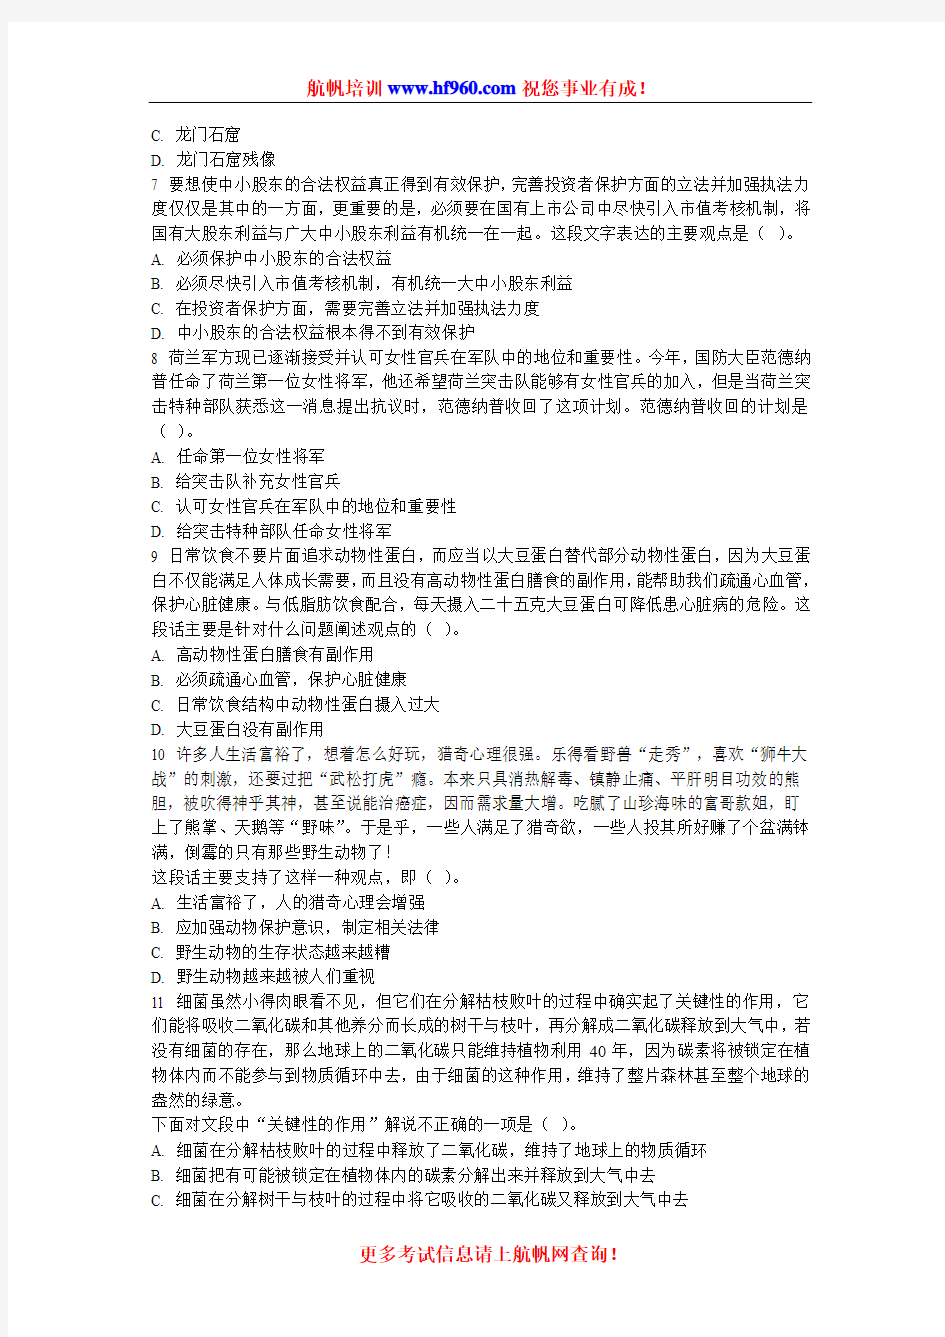 2014年云南省公务员考试行测笔试招聘考点模拟题